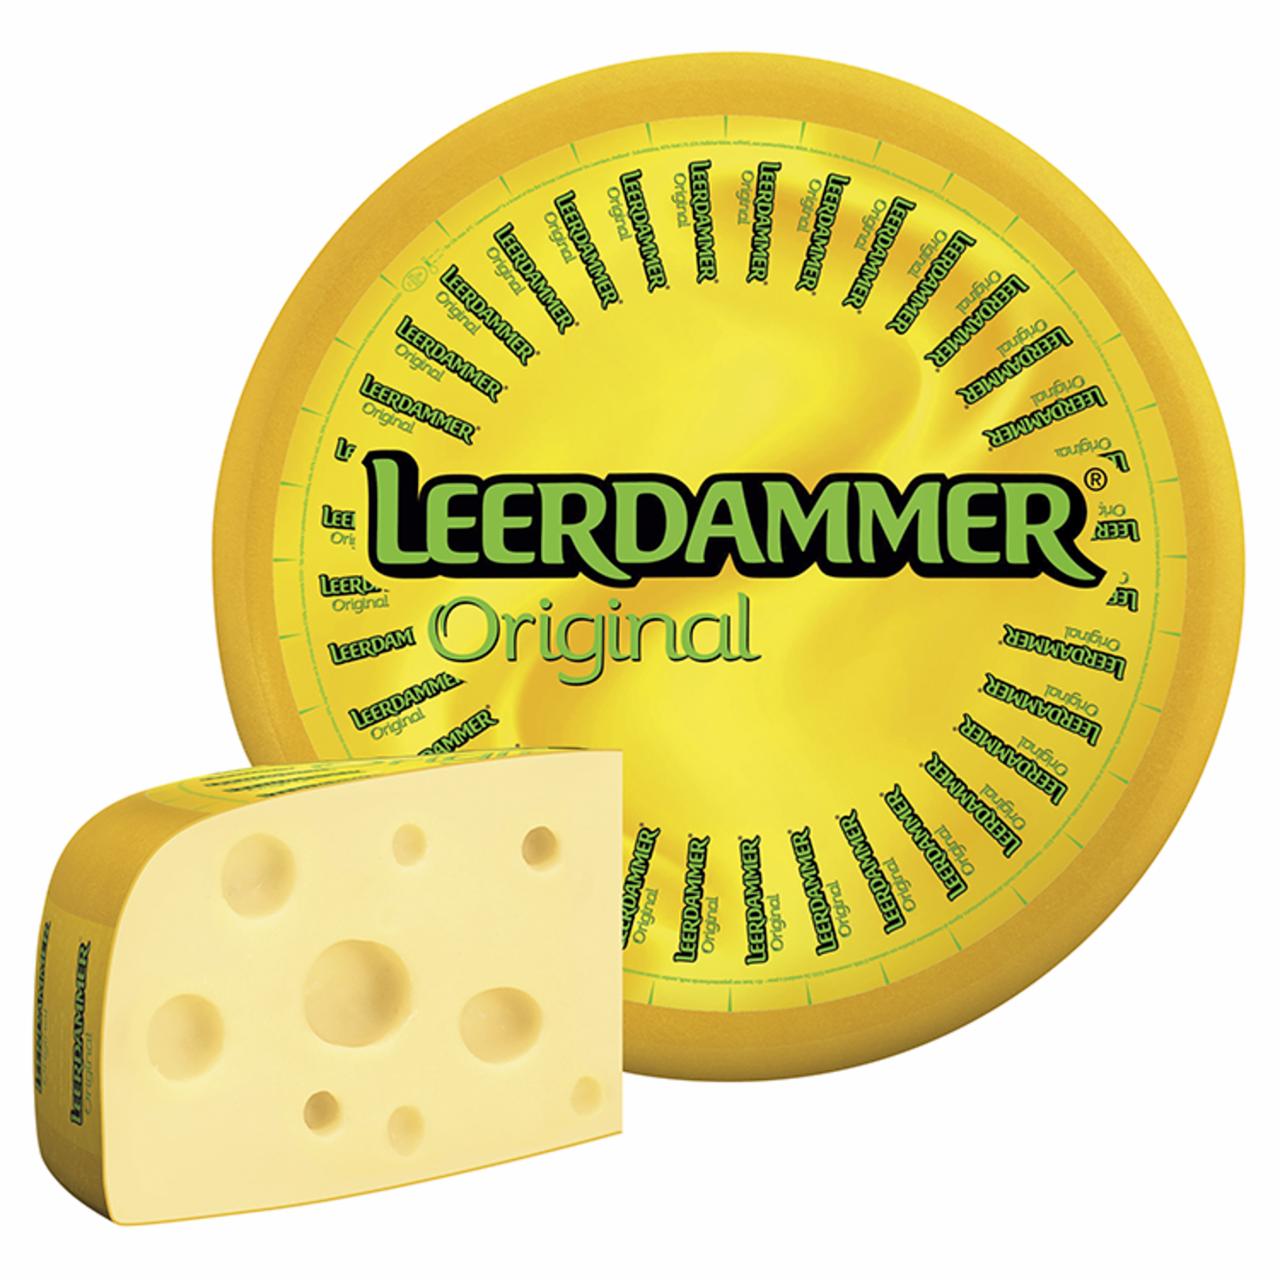 Képek - Leerdammer Original érlelt, félkemény, félzsíros sajt